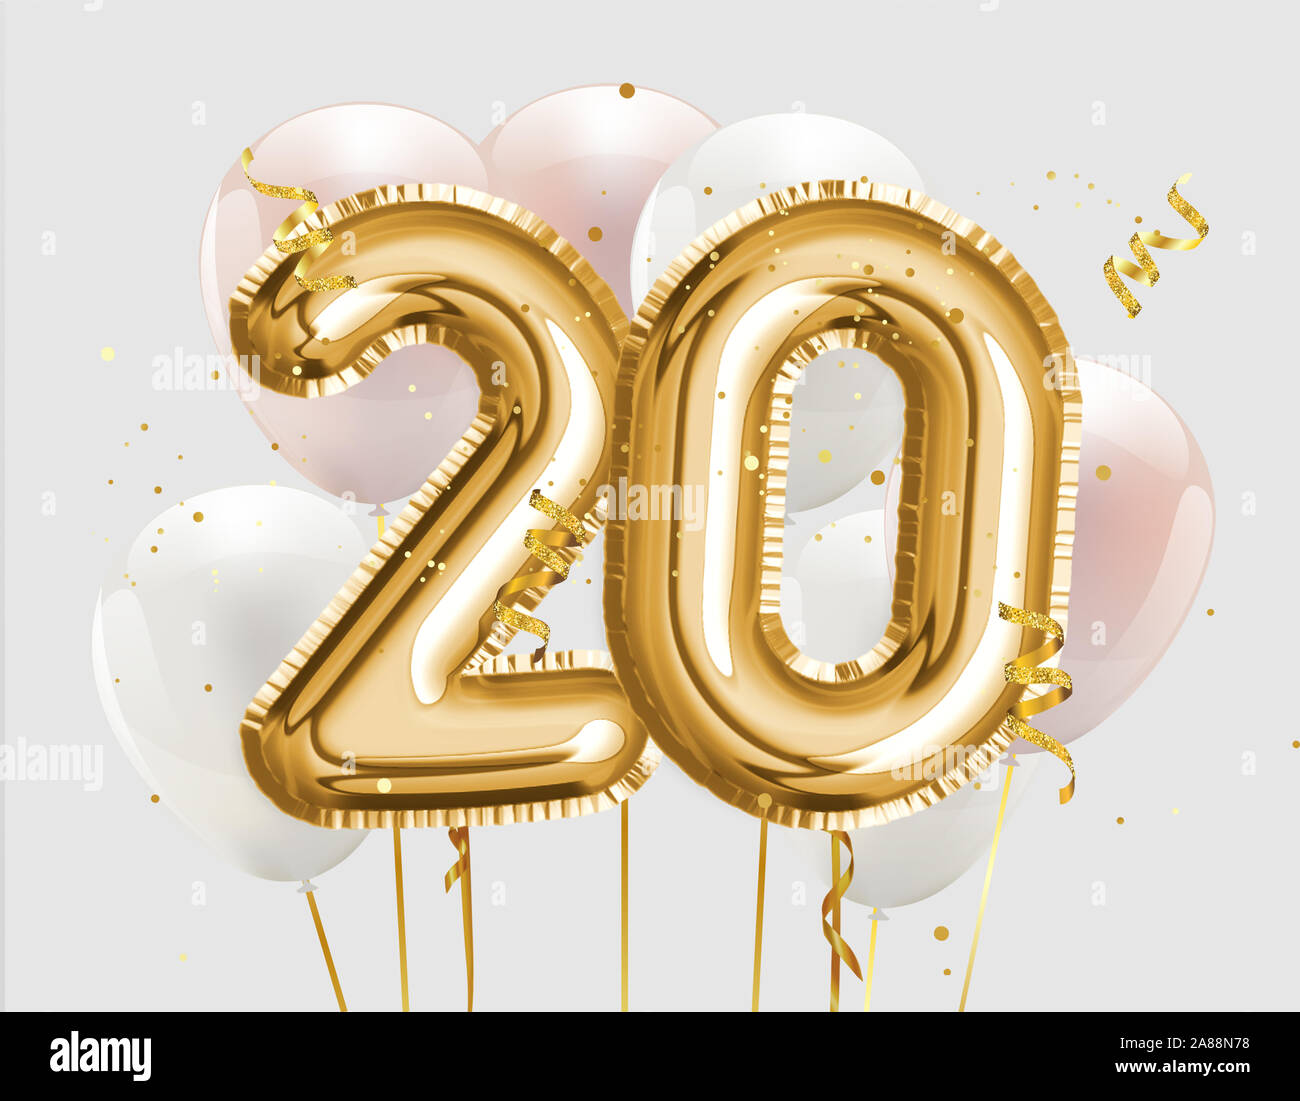 https://c8.alamy.com/compfr/2a88n78/heureux-20e-anniversaire-ballon-d-aluminium-fond-de-voeux-20-ans-anniversaire-modele-logo-20e-celebration-de-confettis-stock-photo-2a88n78.jpg